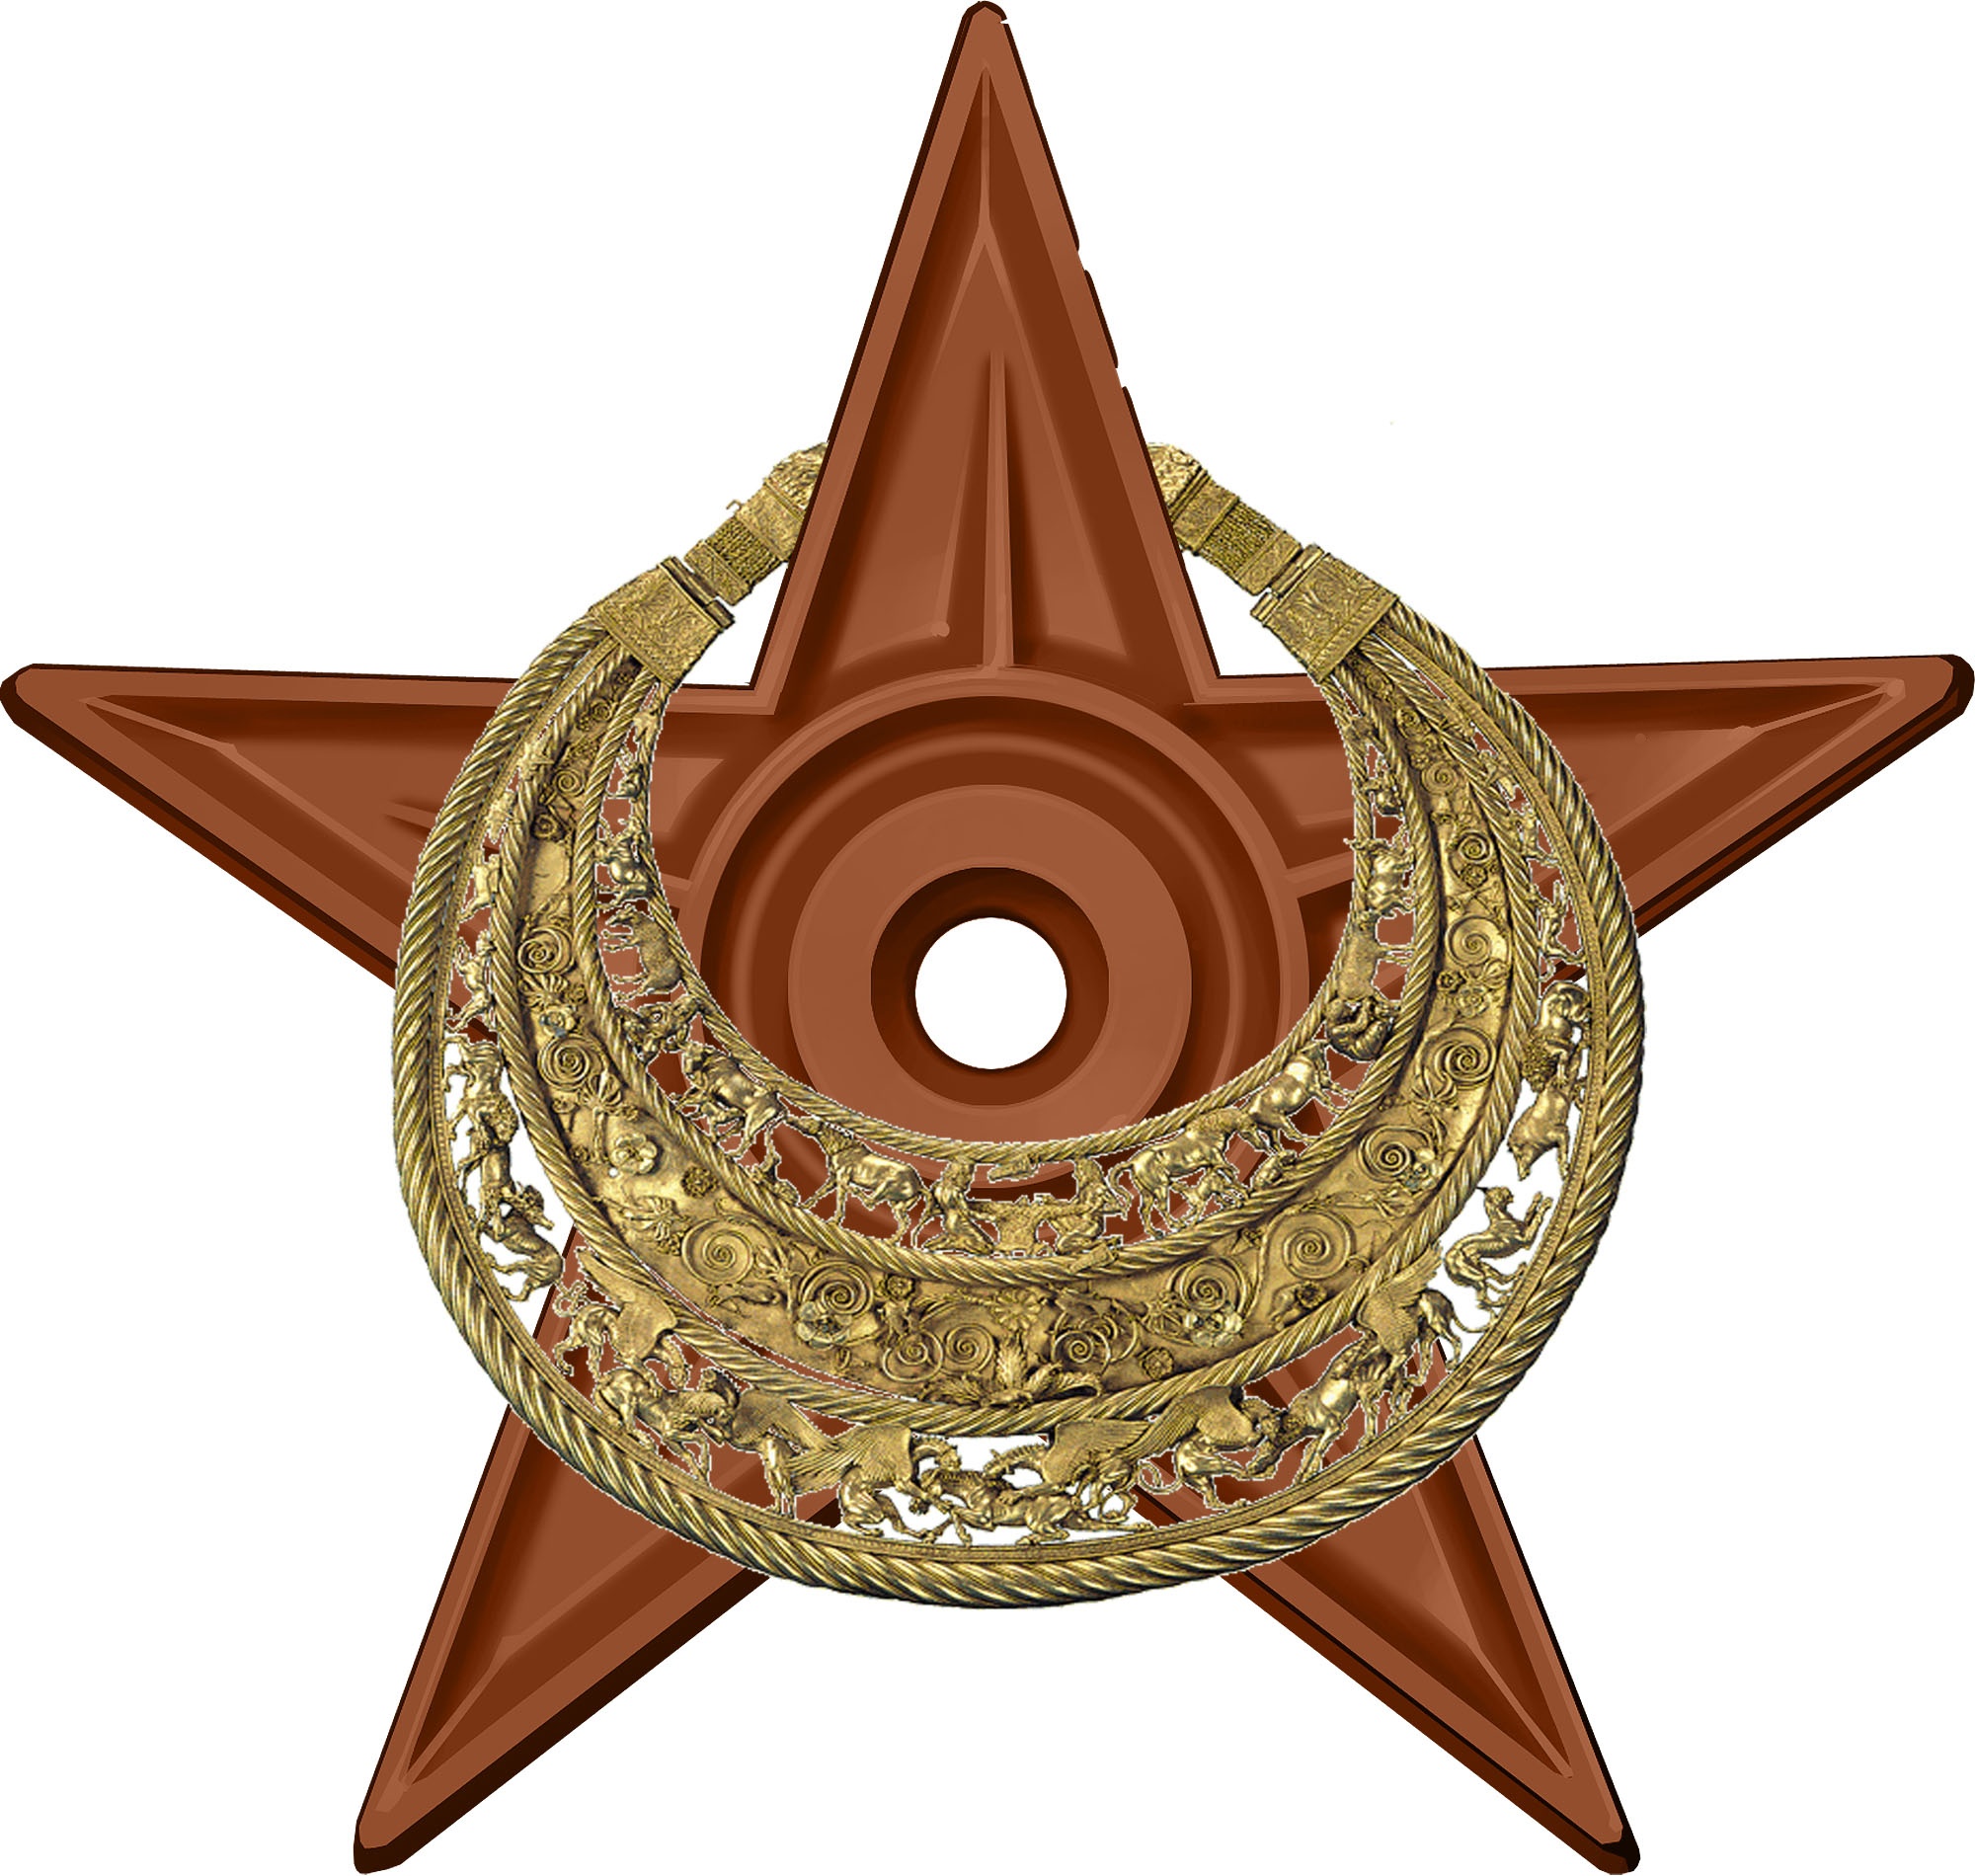 Орден #5 «Археологический», присвоен 20 августа 2011 участником Dmitri Lytov за «продолжение развития археологической темы»